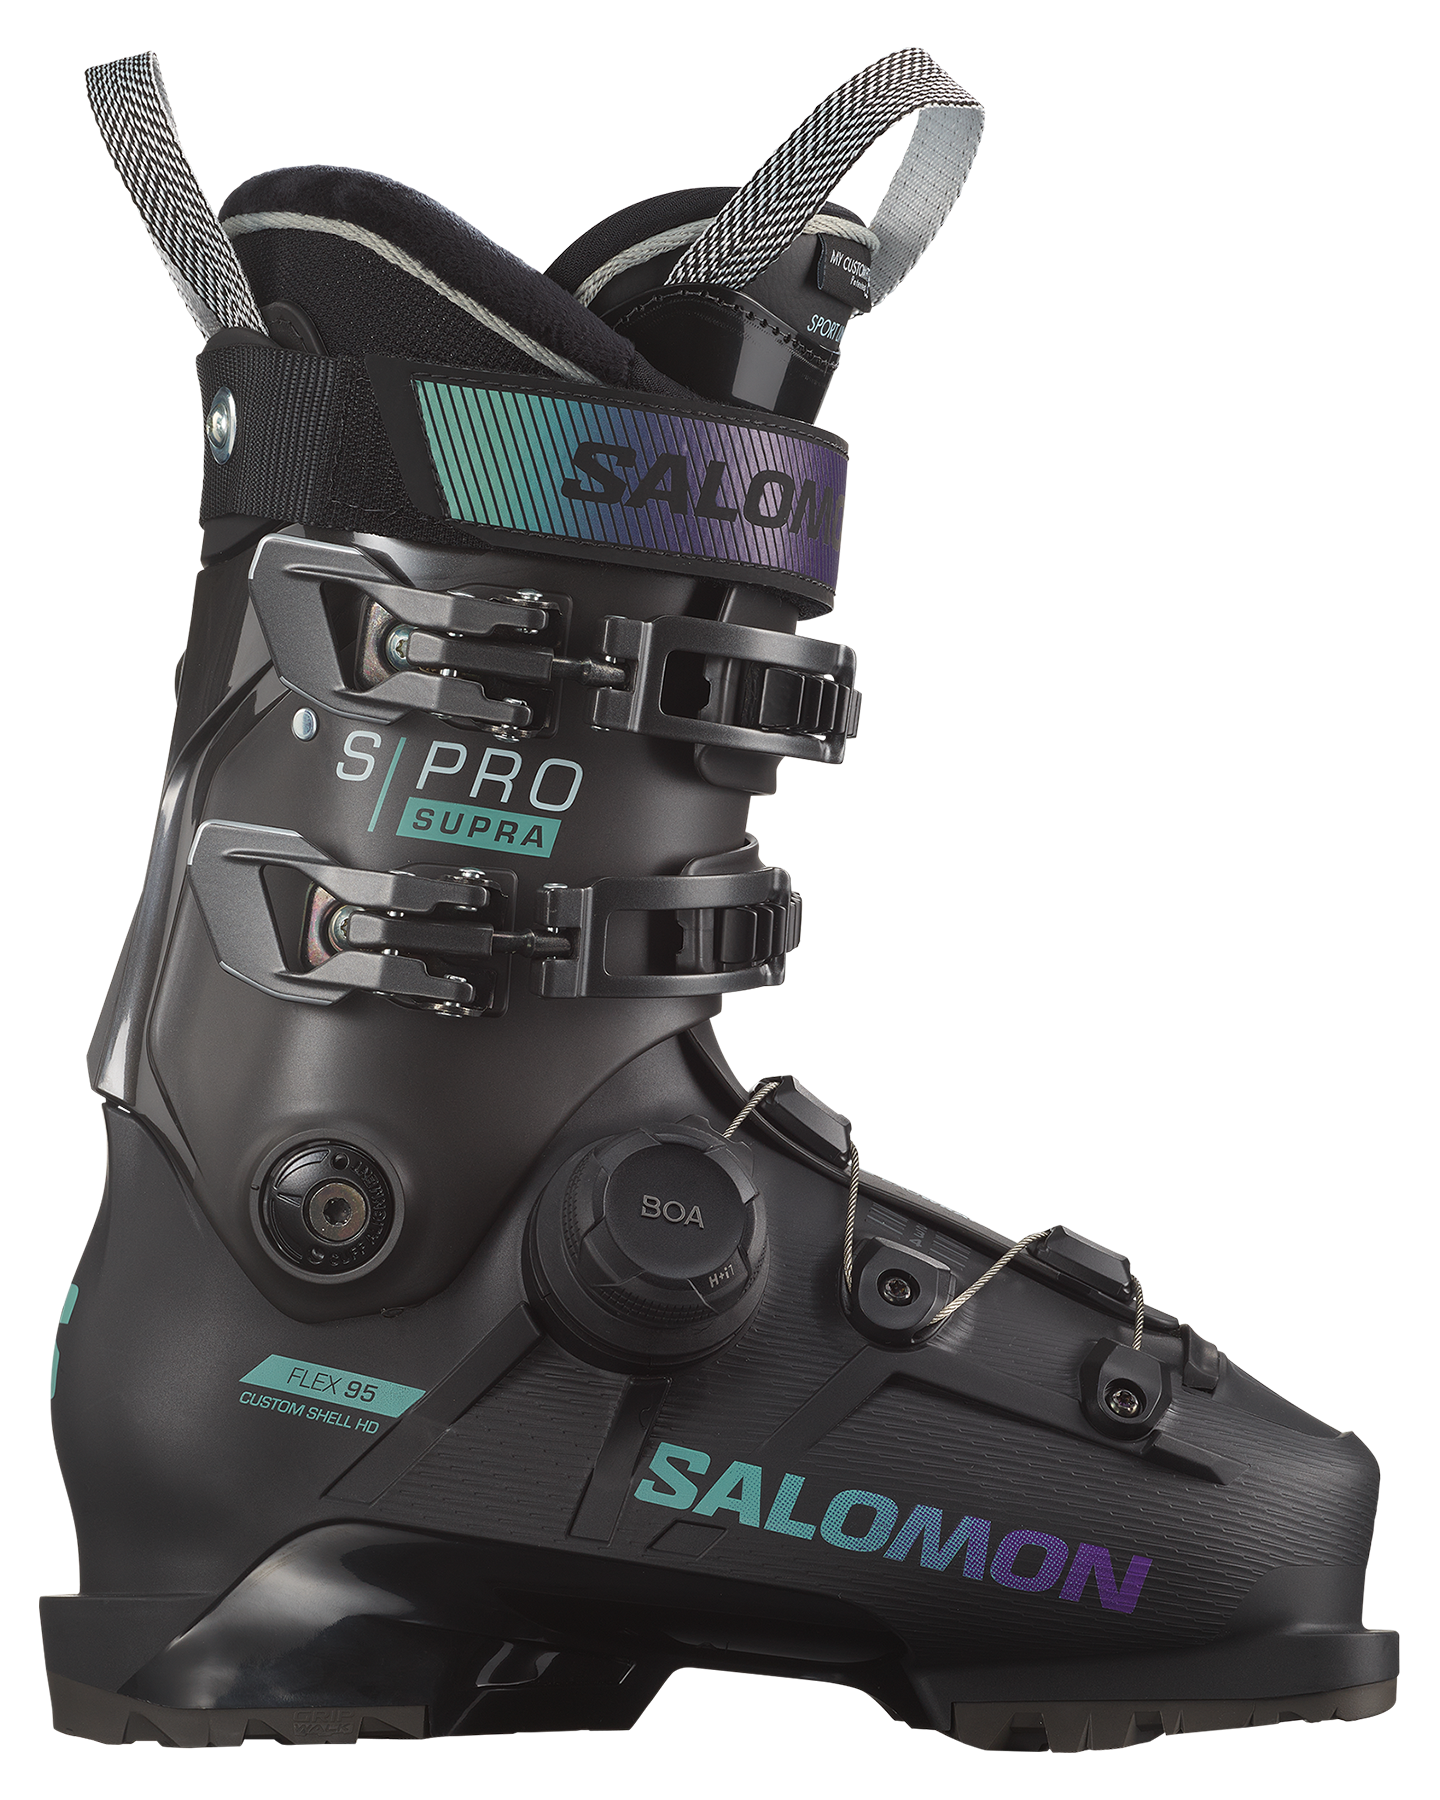 Salomon Pro Supra Boa 95 Women's Ski Boots Women's Snow Ski Boots - Trojan Wake Ski Snow